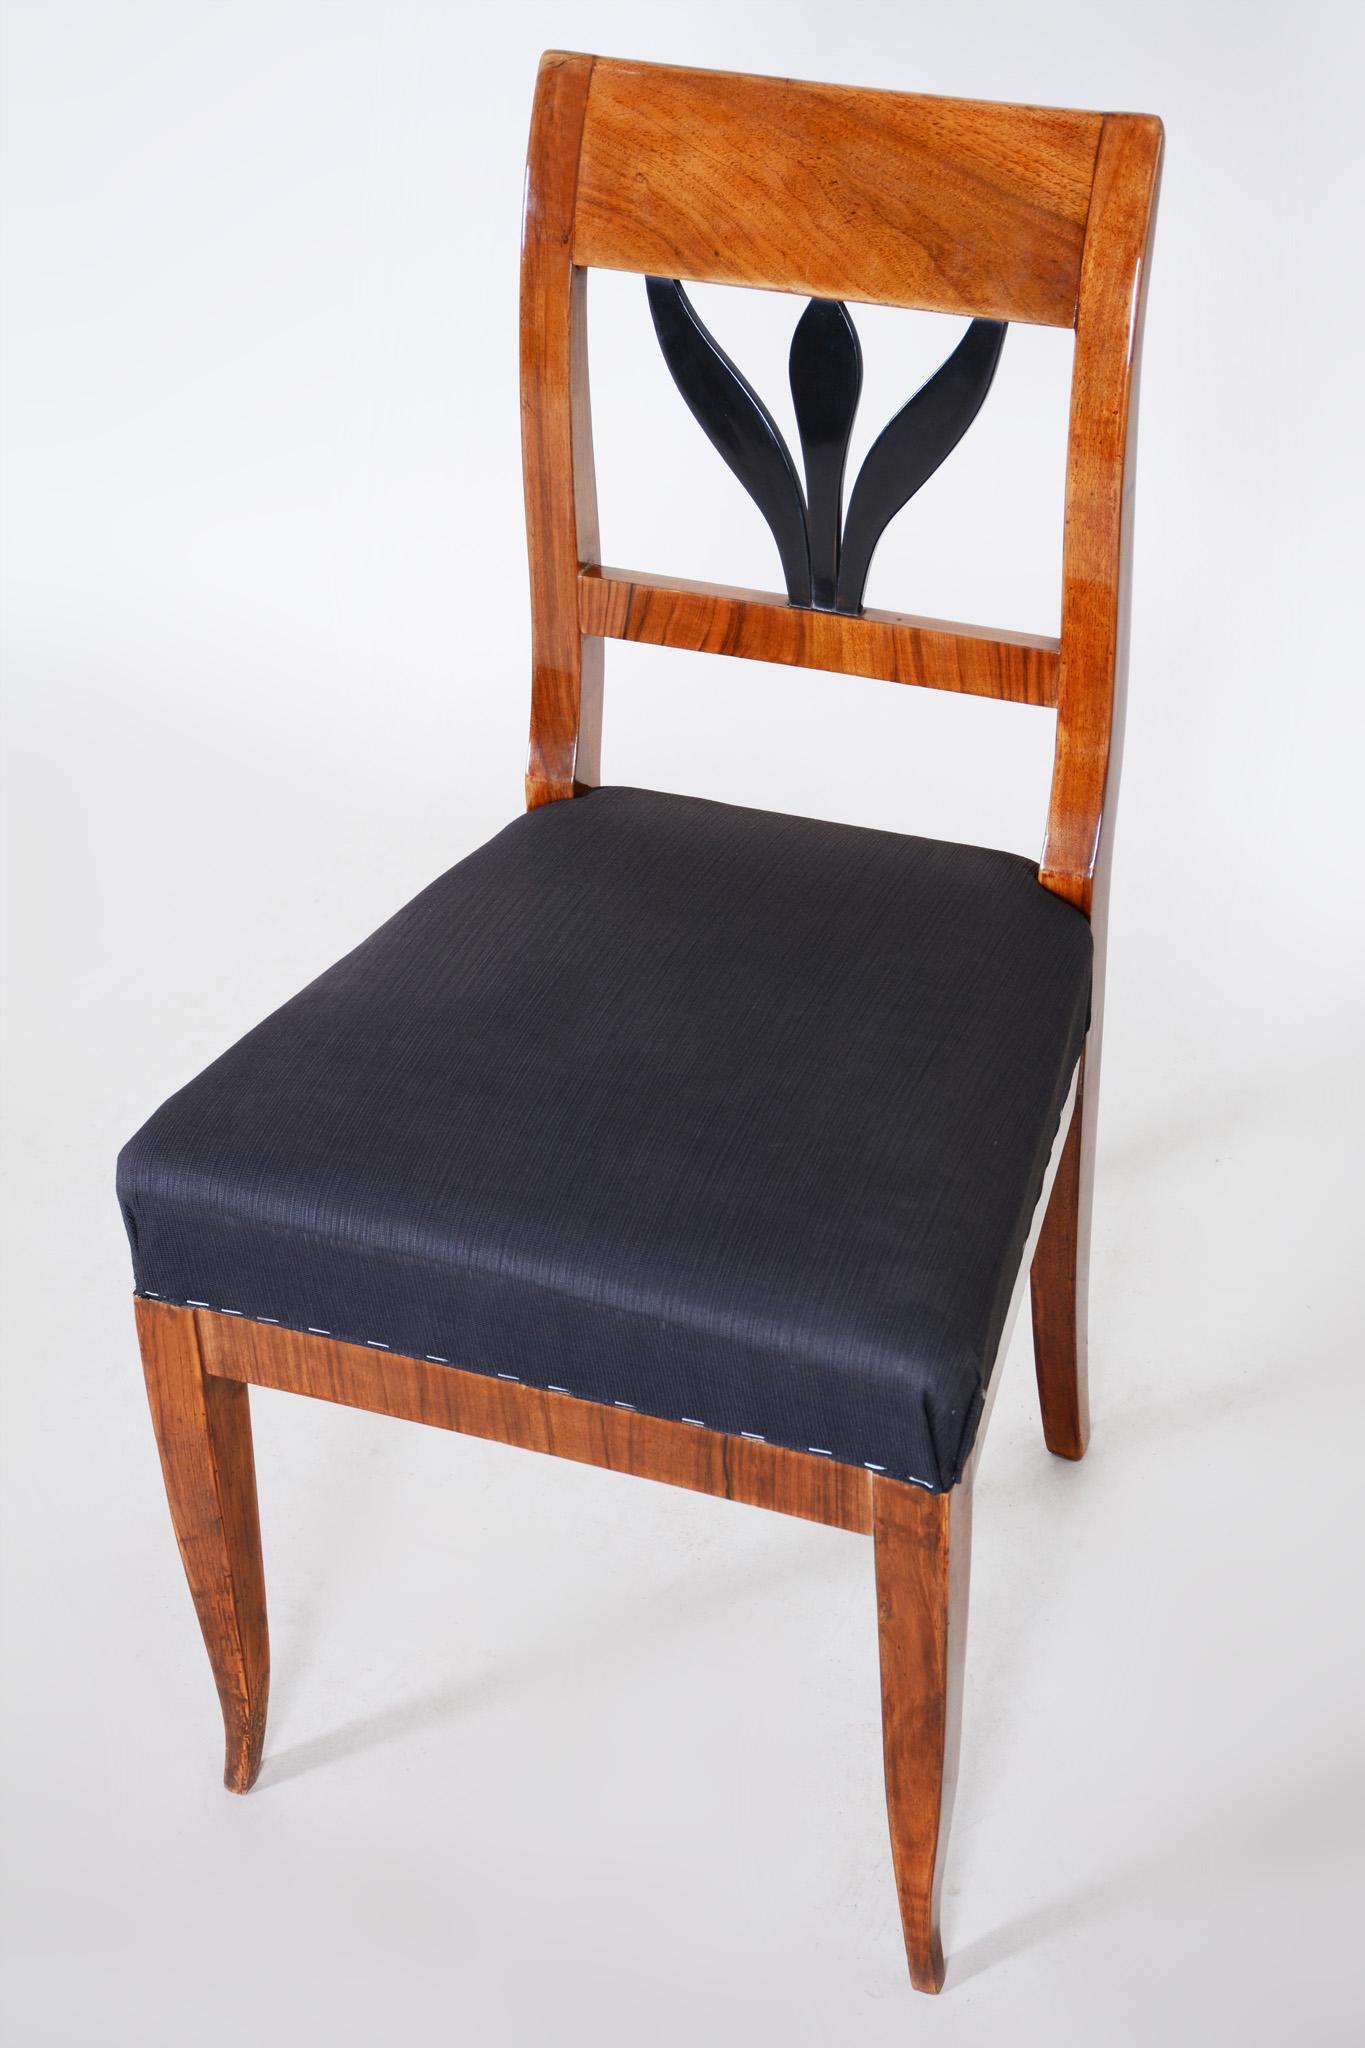 19th Century Czech Walnut Biedermeier Chair, Period 1830-1839, Restored 1